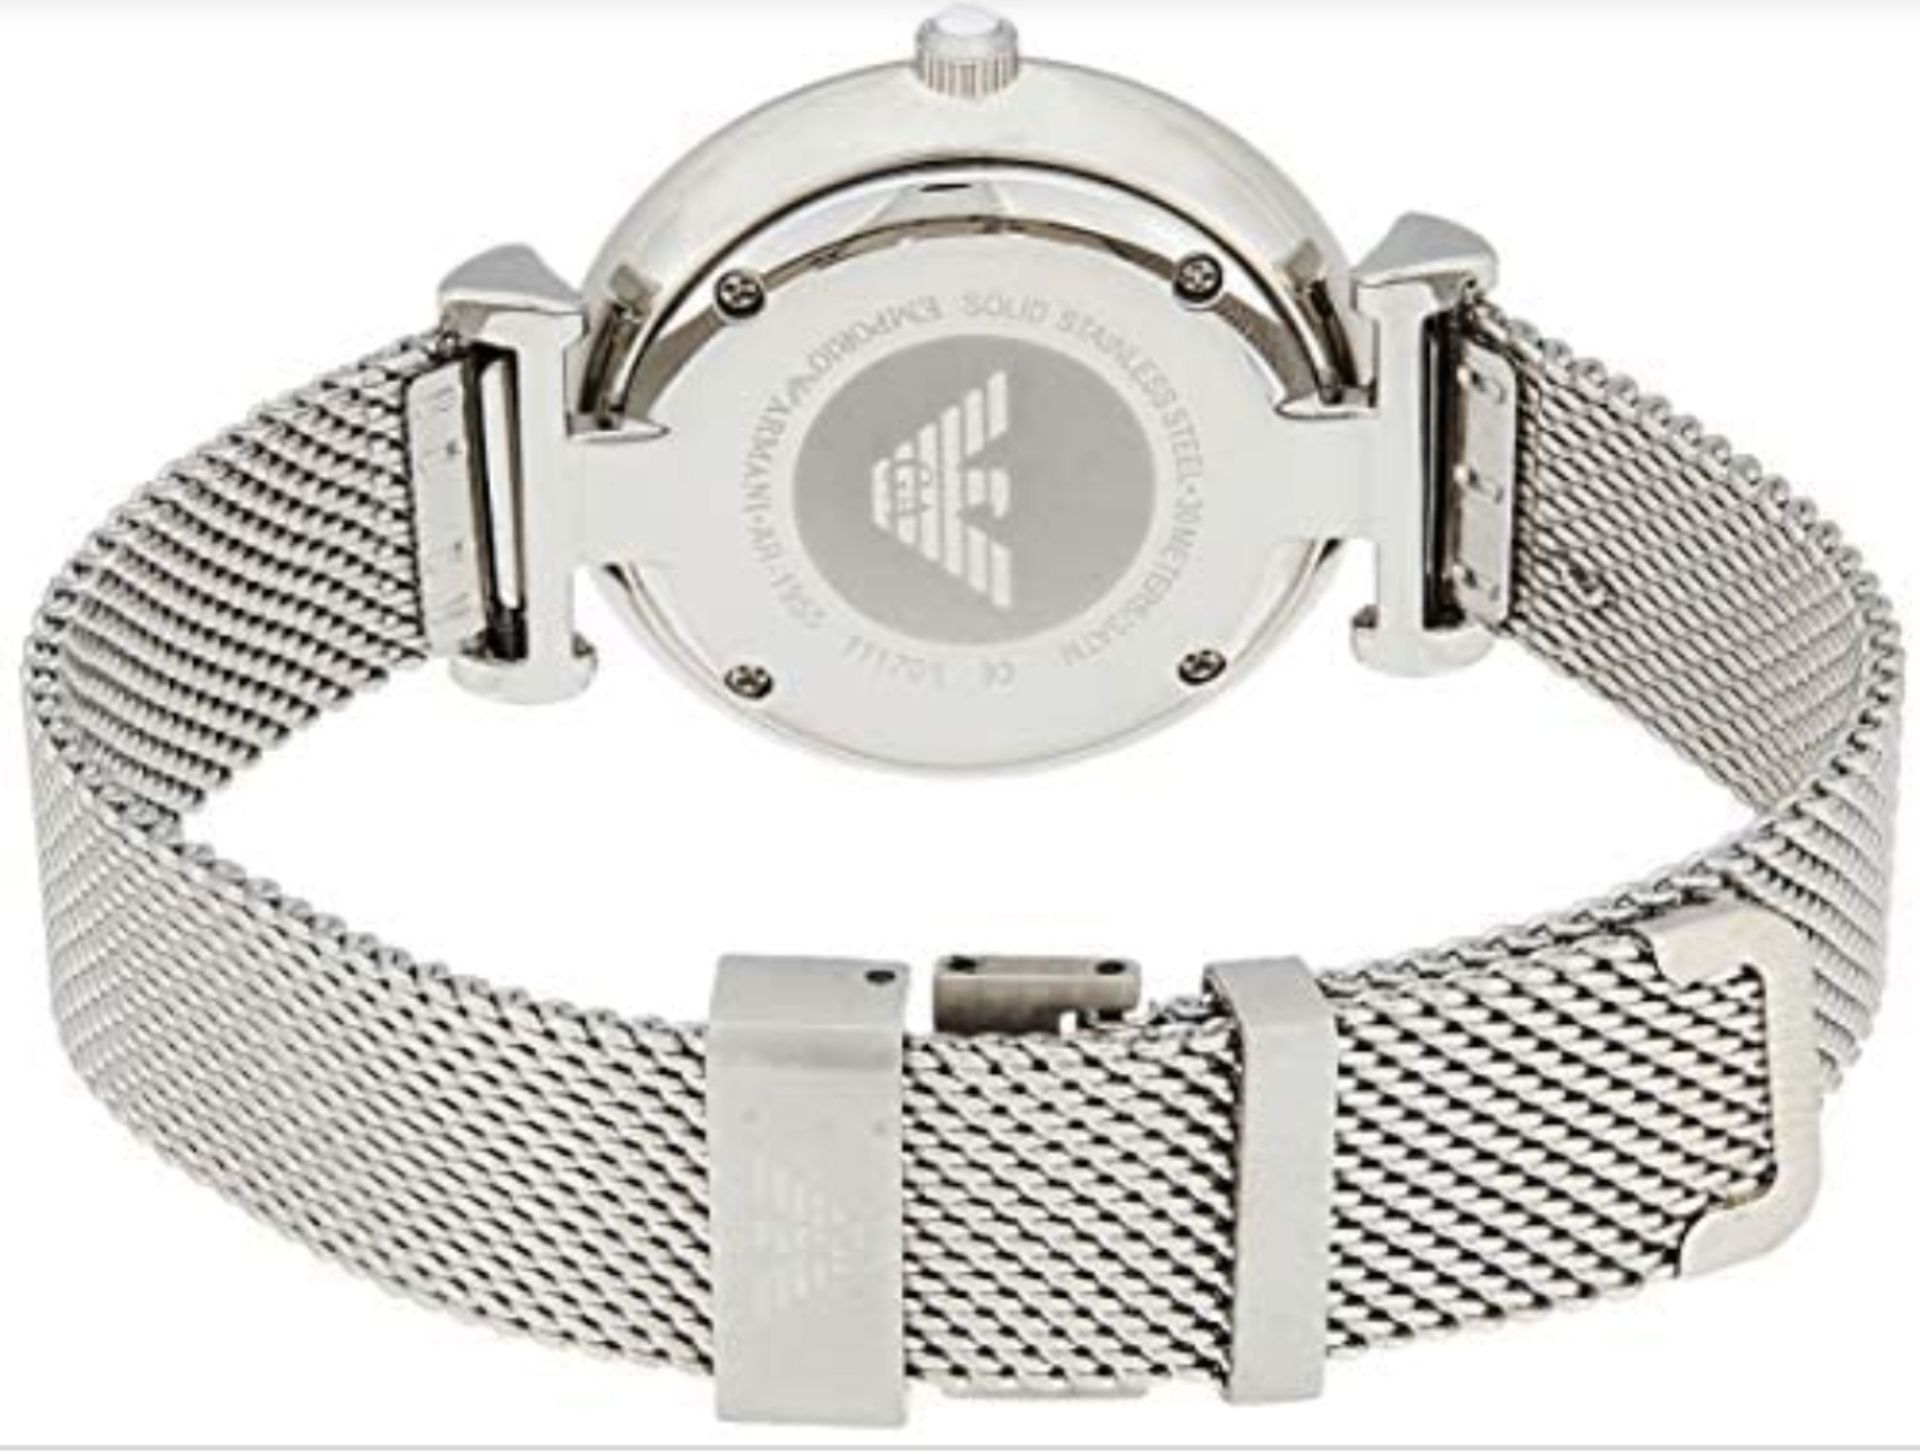 Emporio Armani AR1955 Ladies Silver Mesh Band Quartz Designer Watch - Image 2 of 4